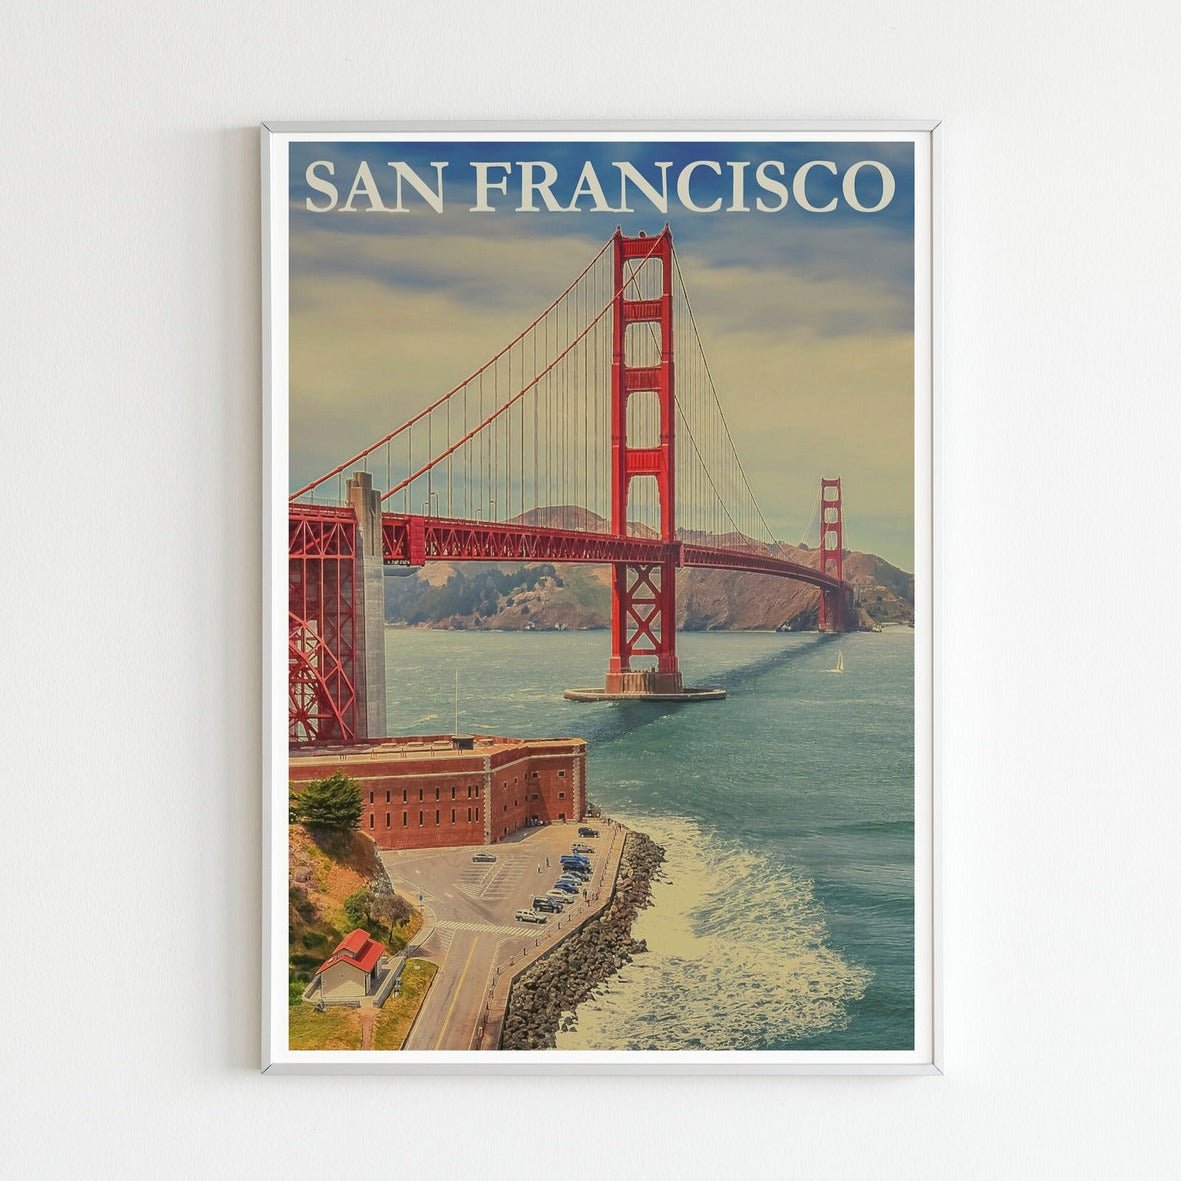 San Francisco - Affiche de voyage vintage des États-Unis